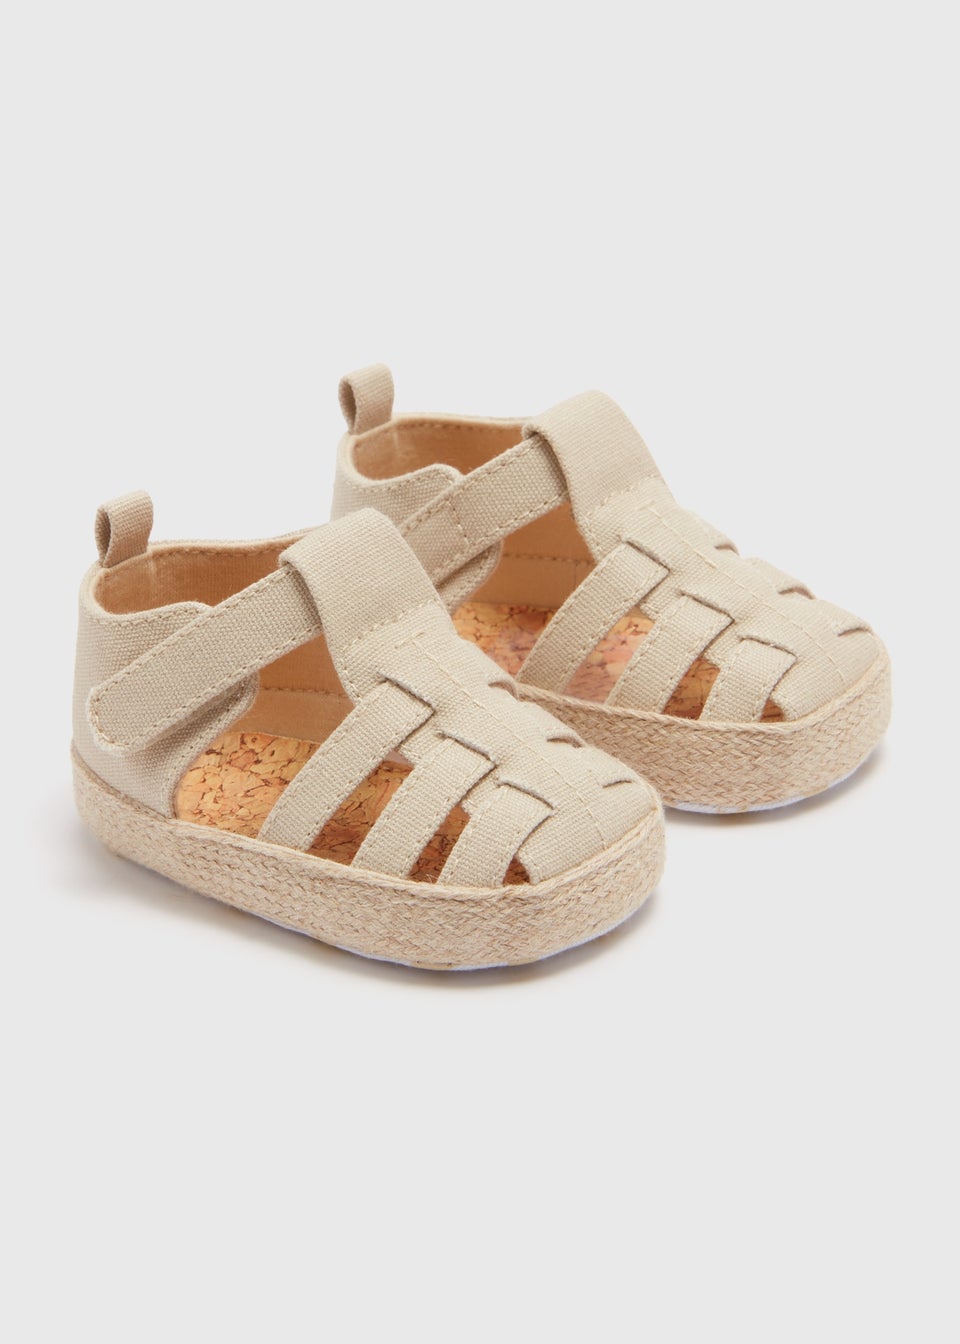 Baby Cream Caged Espadrille Sandals (Newborn-18mths)